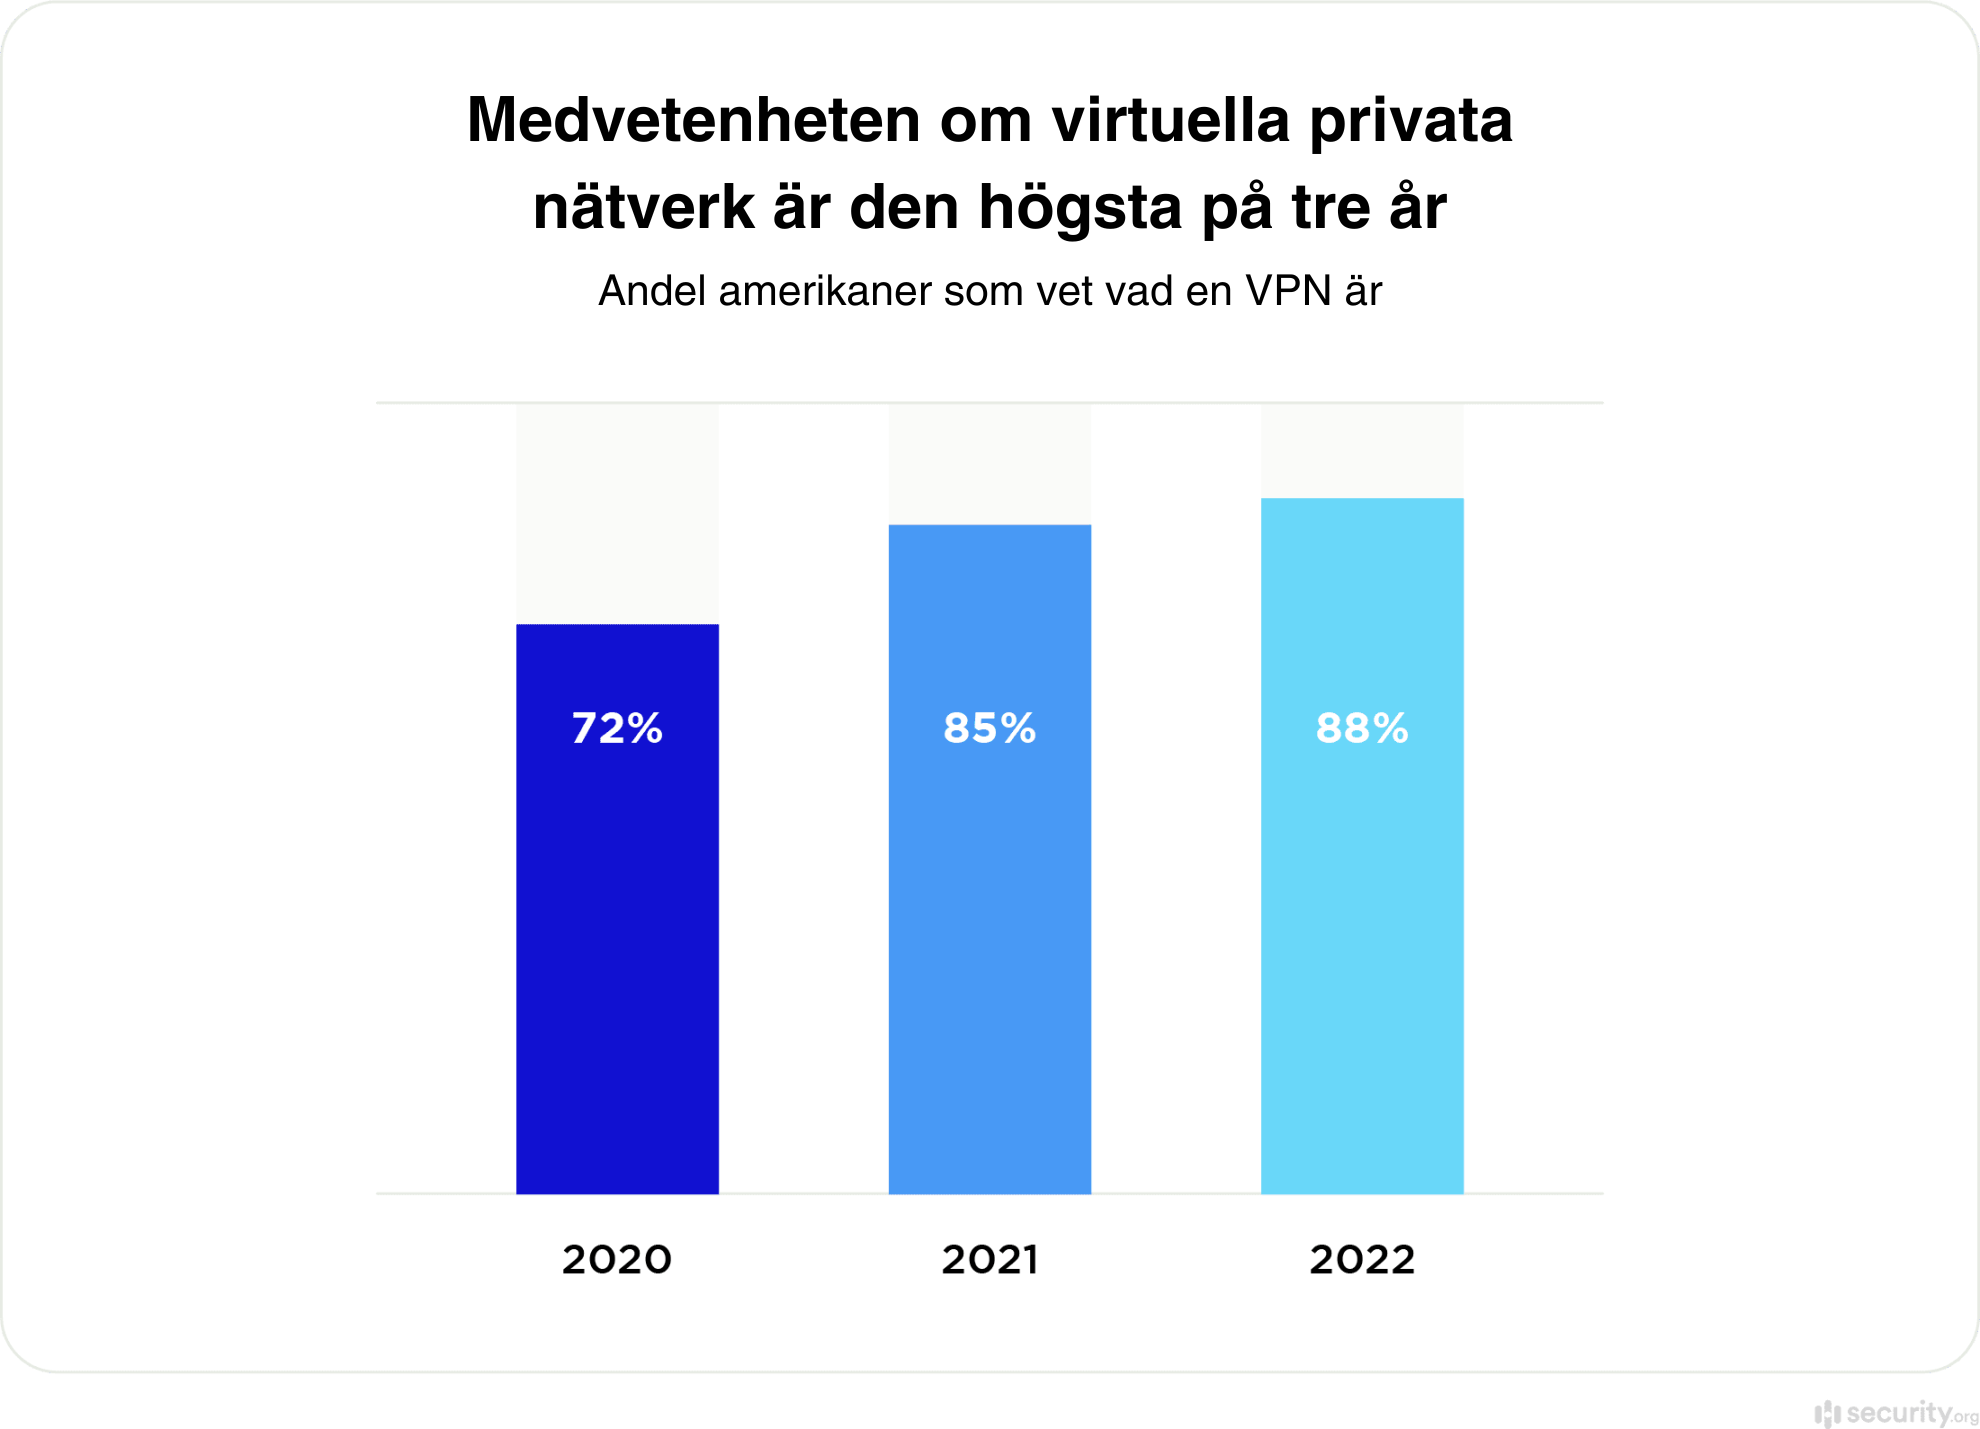 VPN statistik om hur många som vet vad VPN är 2020-2022